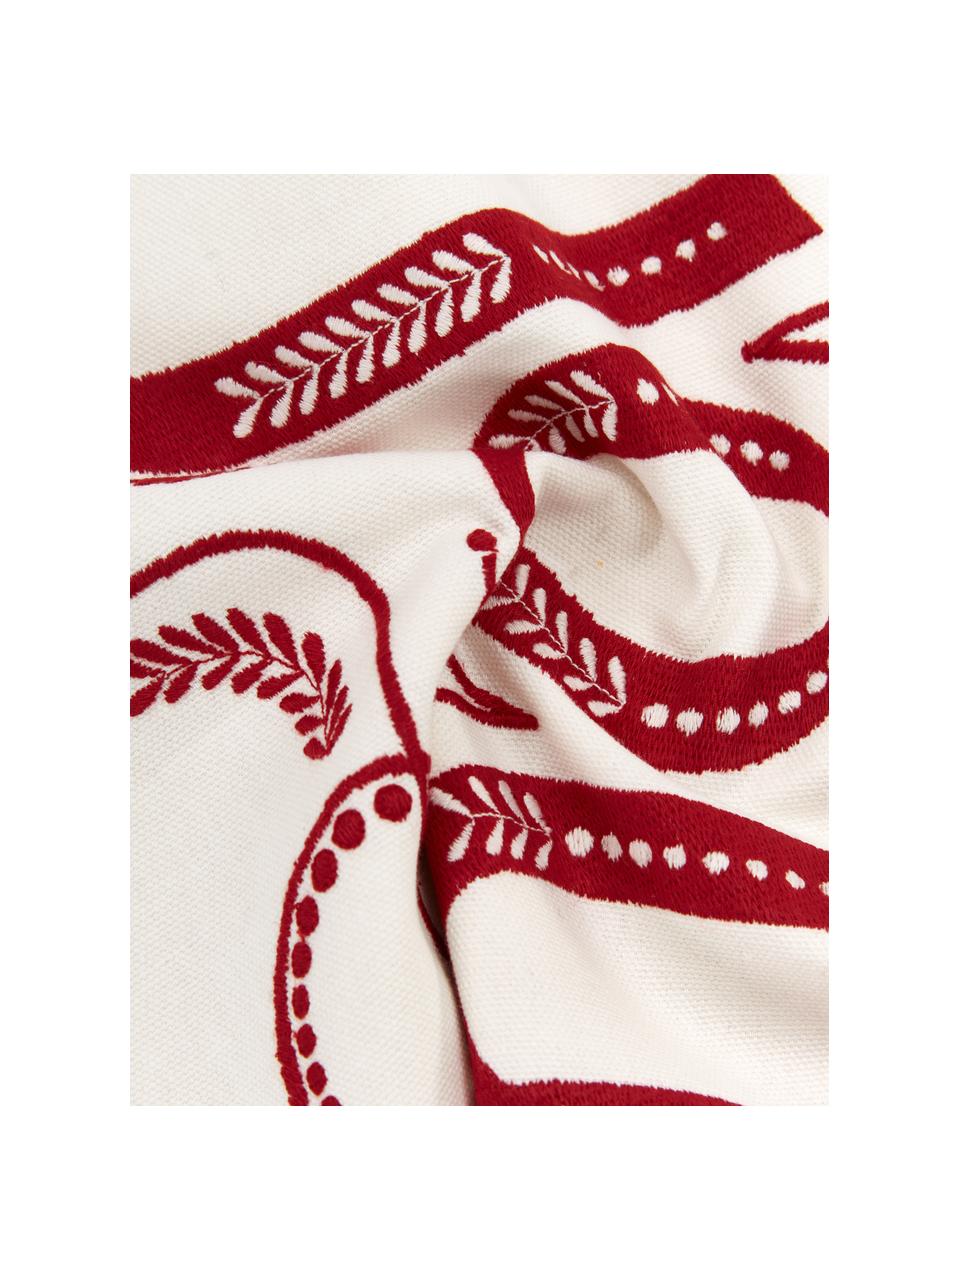 Poszewka na poduszkę Joy, 100% bawełna, Biały, czerwony, S 45 x D 45 cm